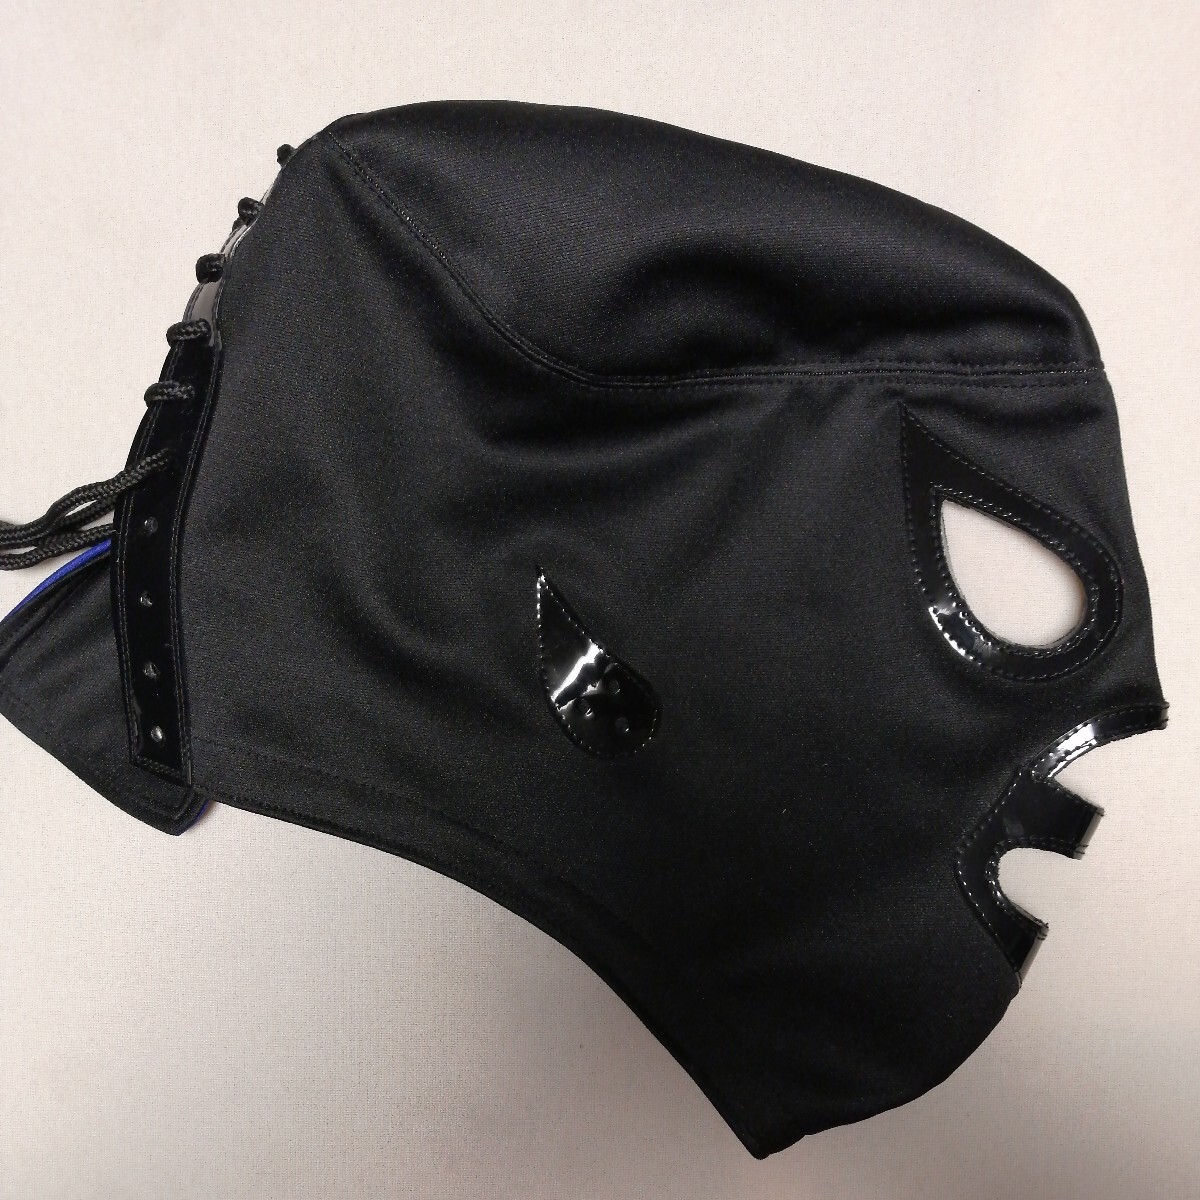 サント・ネグロ 黒ジャージ 試合用マスク メキシカンマスク 暗闇の聖者の画像2